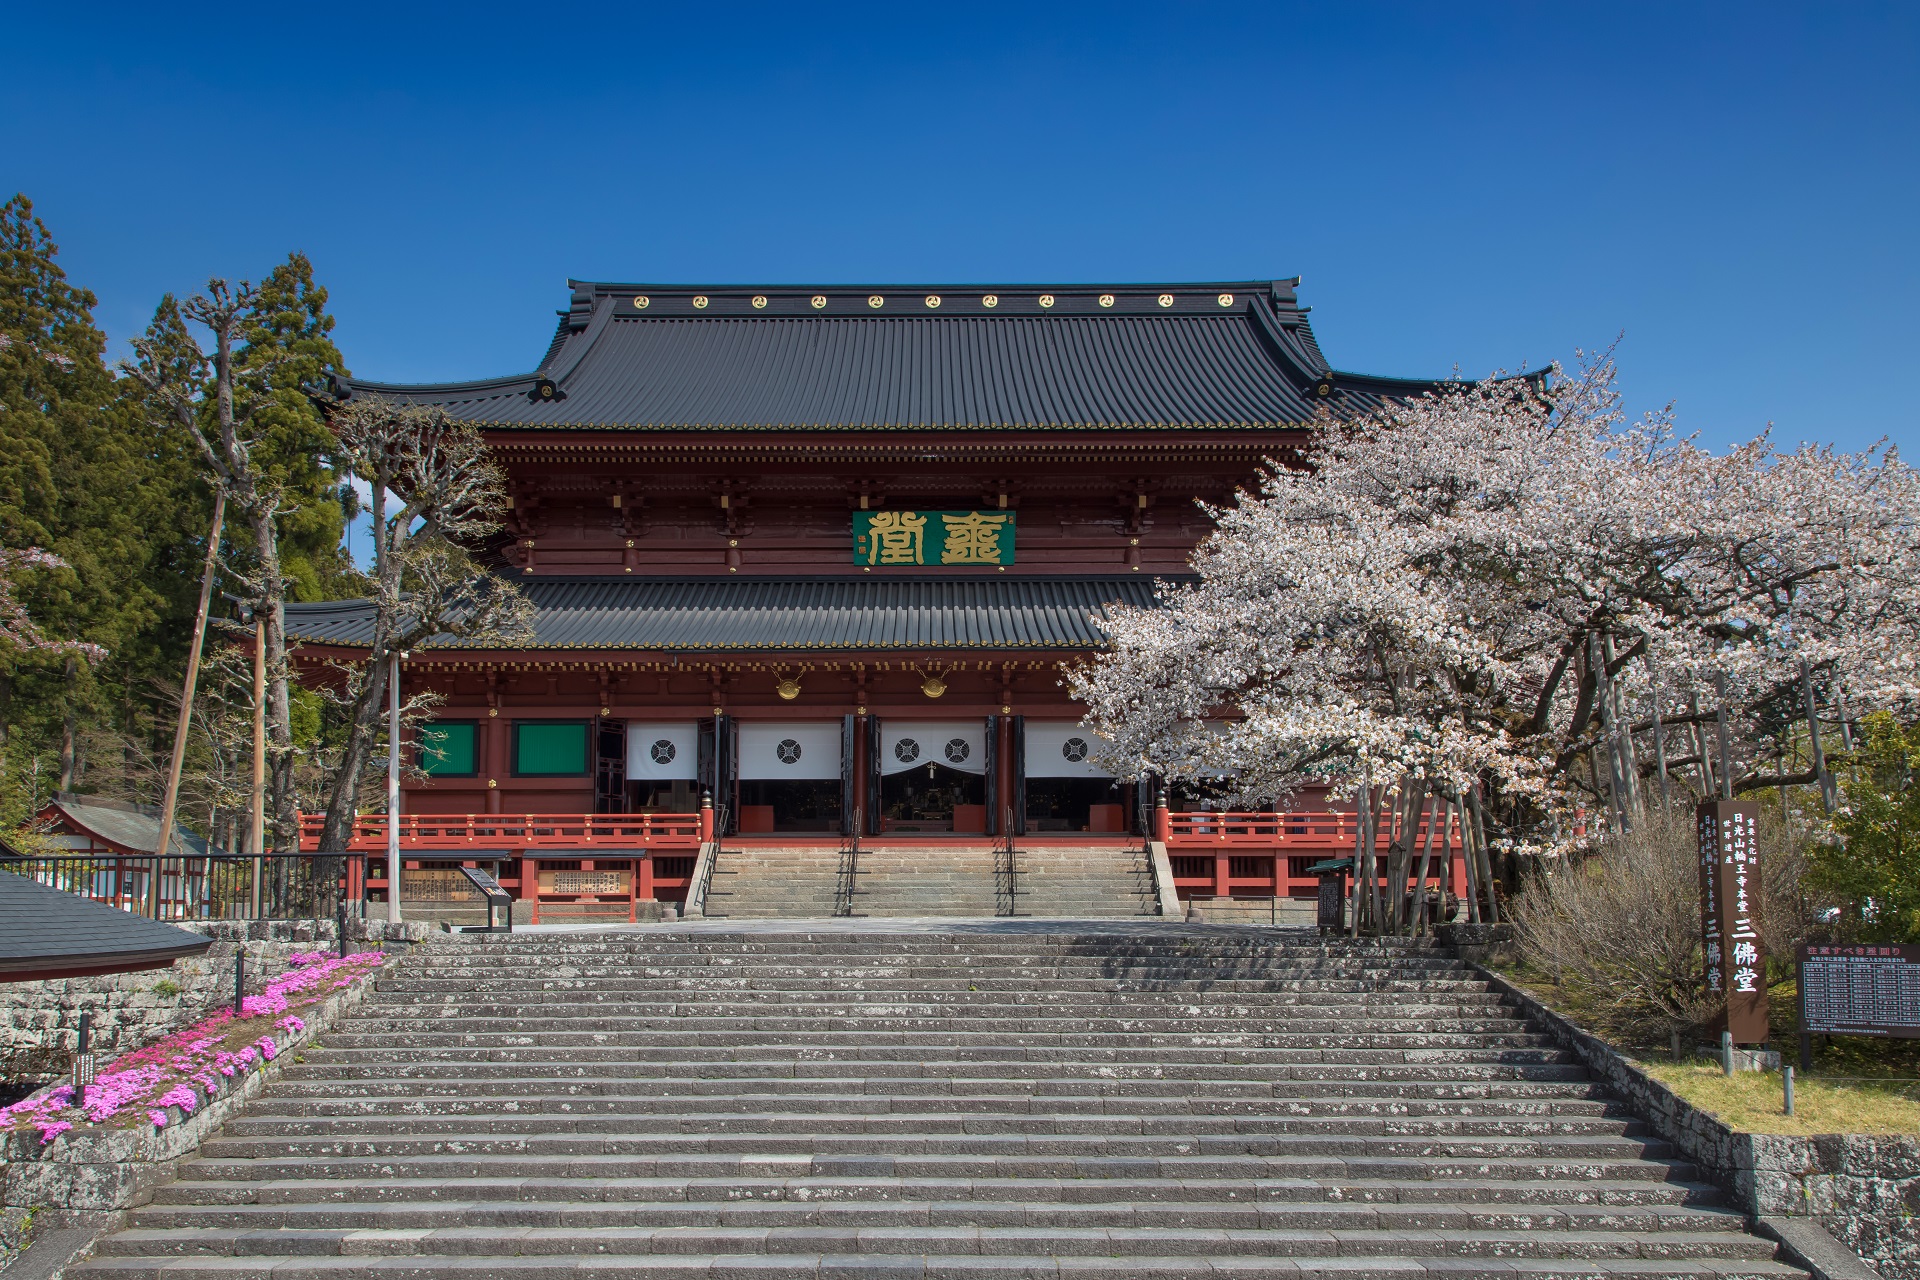 桜が咲いている階段を登ったところに鎮座している輪王寺を正面から写した写真